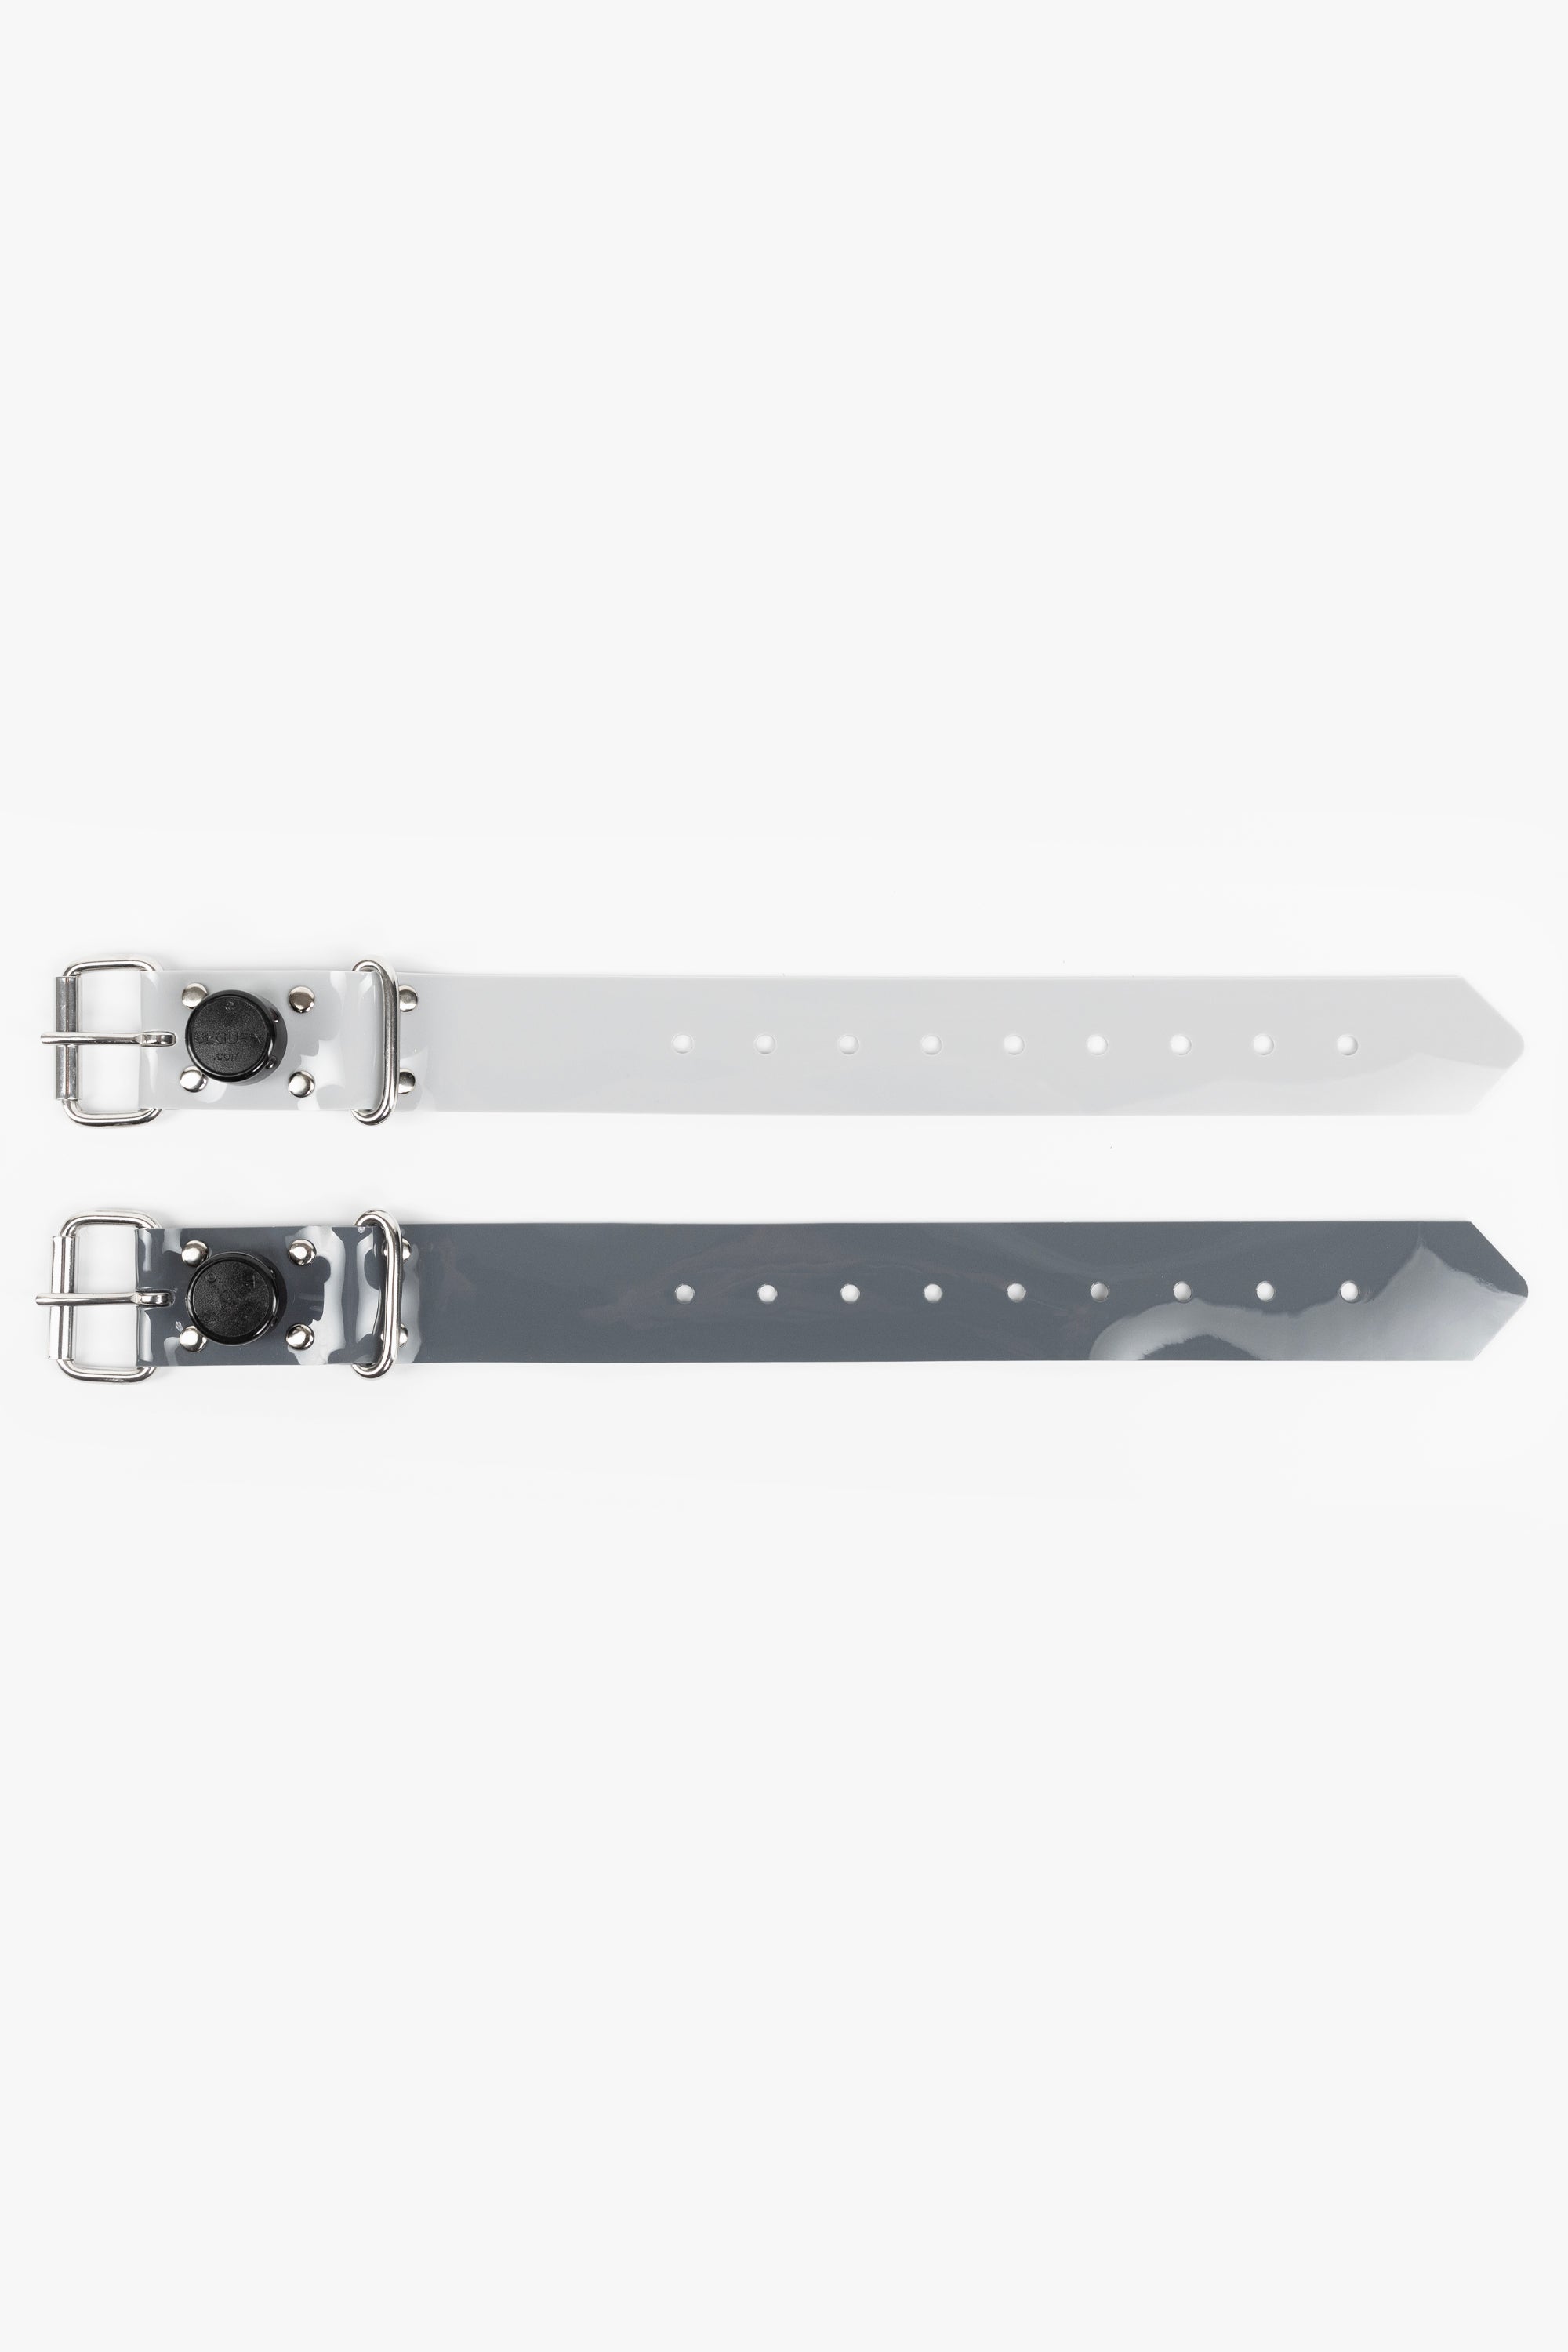 Bondage PVC strap lockable segufix 40 mm, different lengths, black/chrome